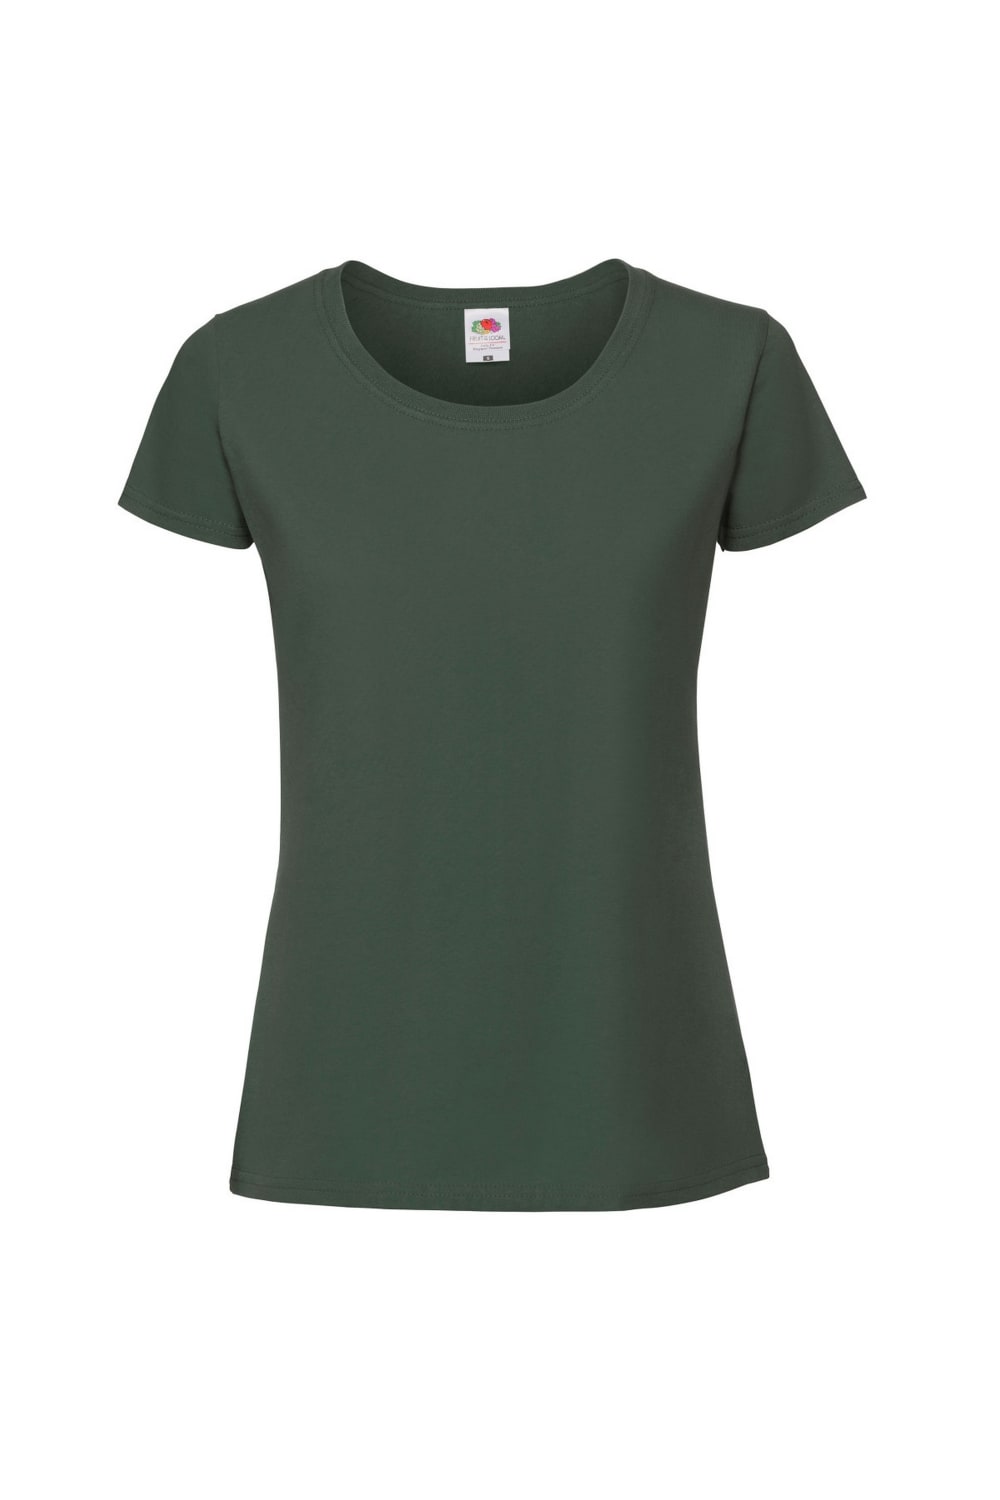 Fruit Of The Loom Womens/Ladies Ringspun Premium T-Shirt (Racing Green)